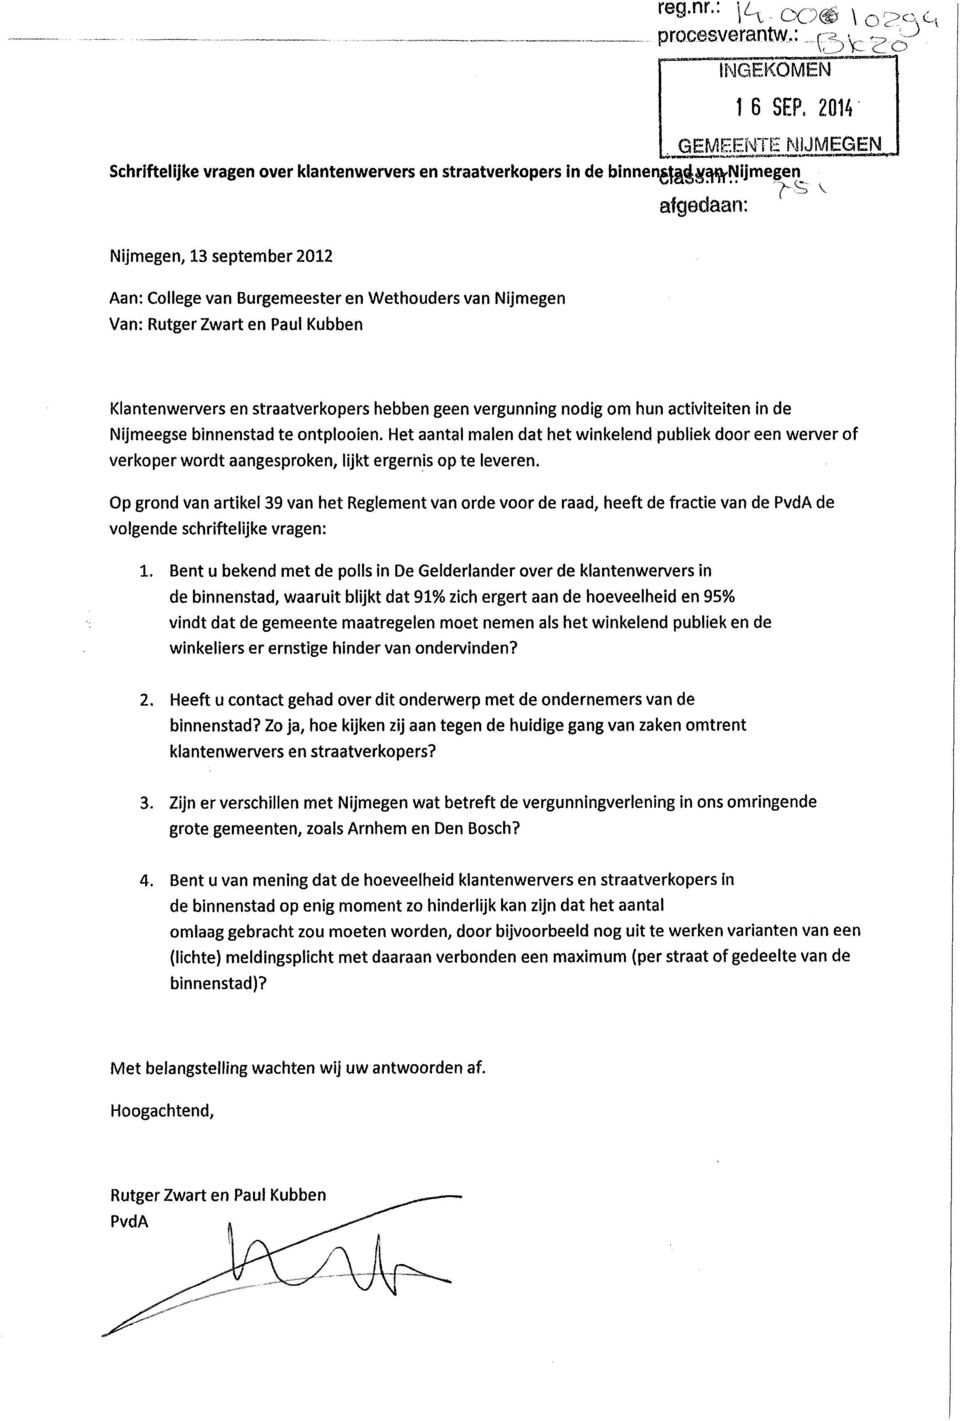 Nijmegen Van: Rutger Zwart en Paul Kubben Klantenwervers en straatverkopers hebben geen vergunning nodig om hun activiteiten in de Nijmeegse binnenstad te ontplooien.